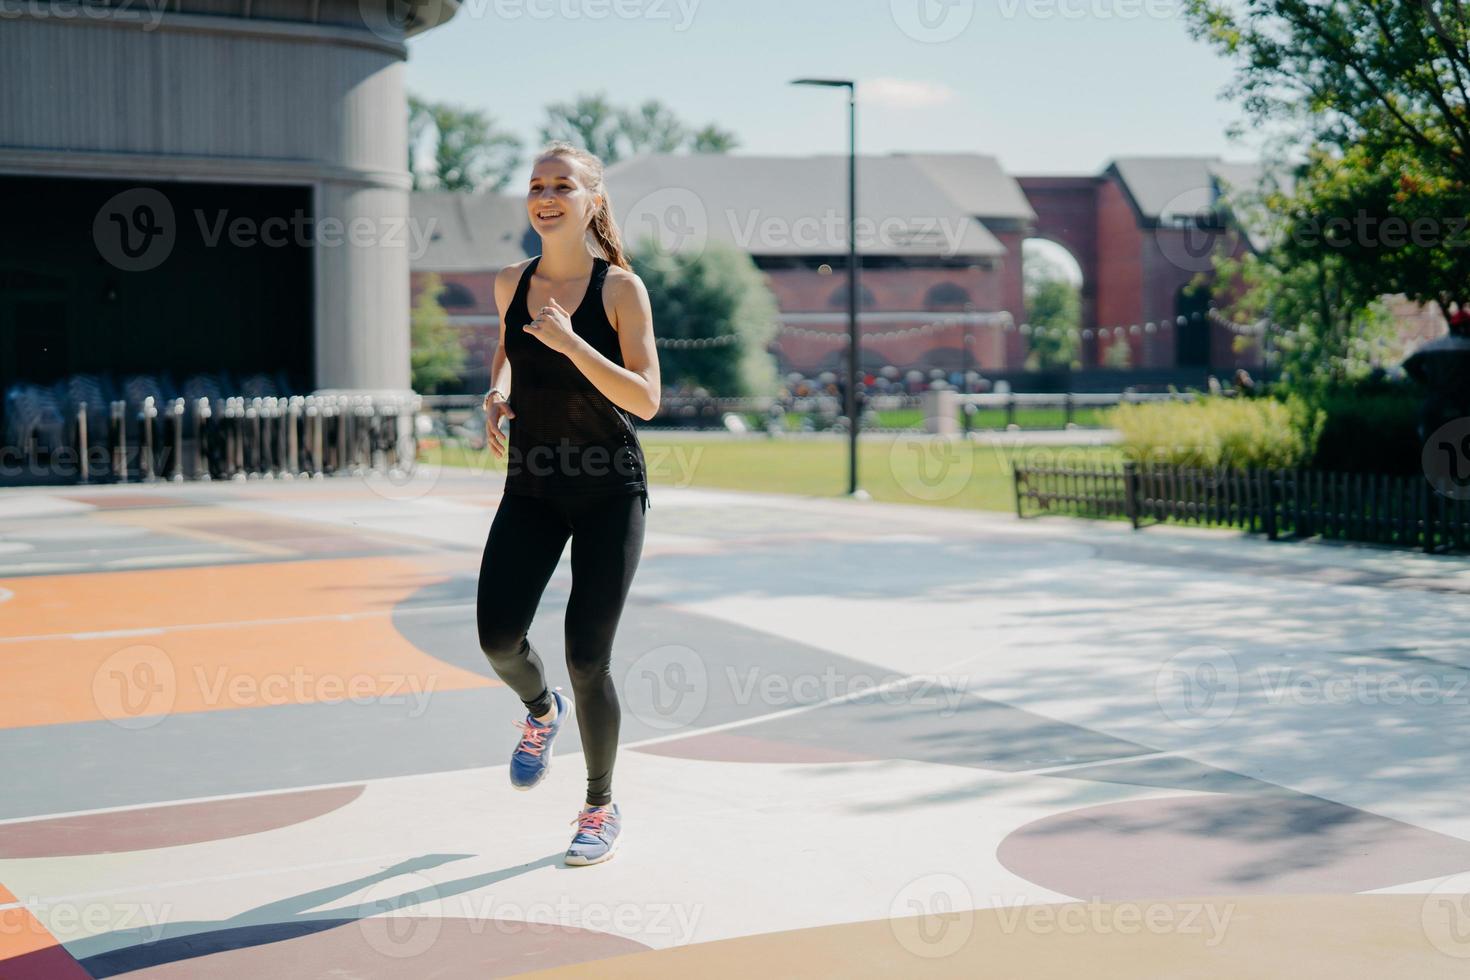 glad atletisk kvinna springer aktivt på stadion klädd i svarta sportkläder njuter av fysiska aktiviteter utomhus under sommardagen är full av energi. människor sport och motivation koncept foto